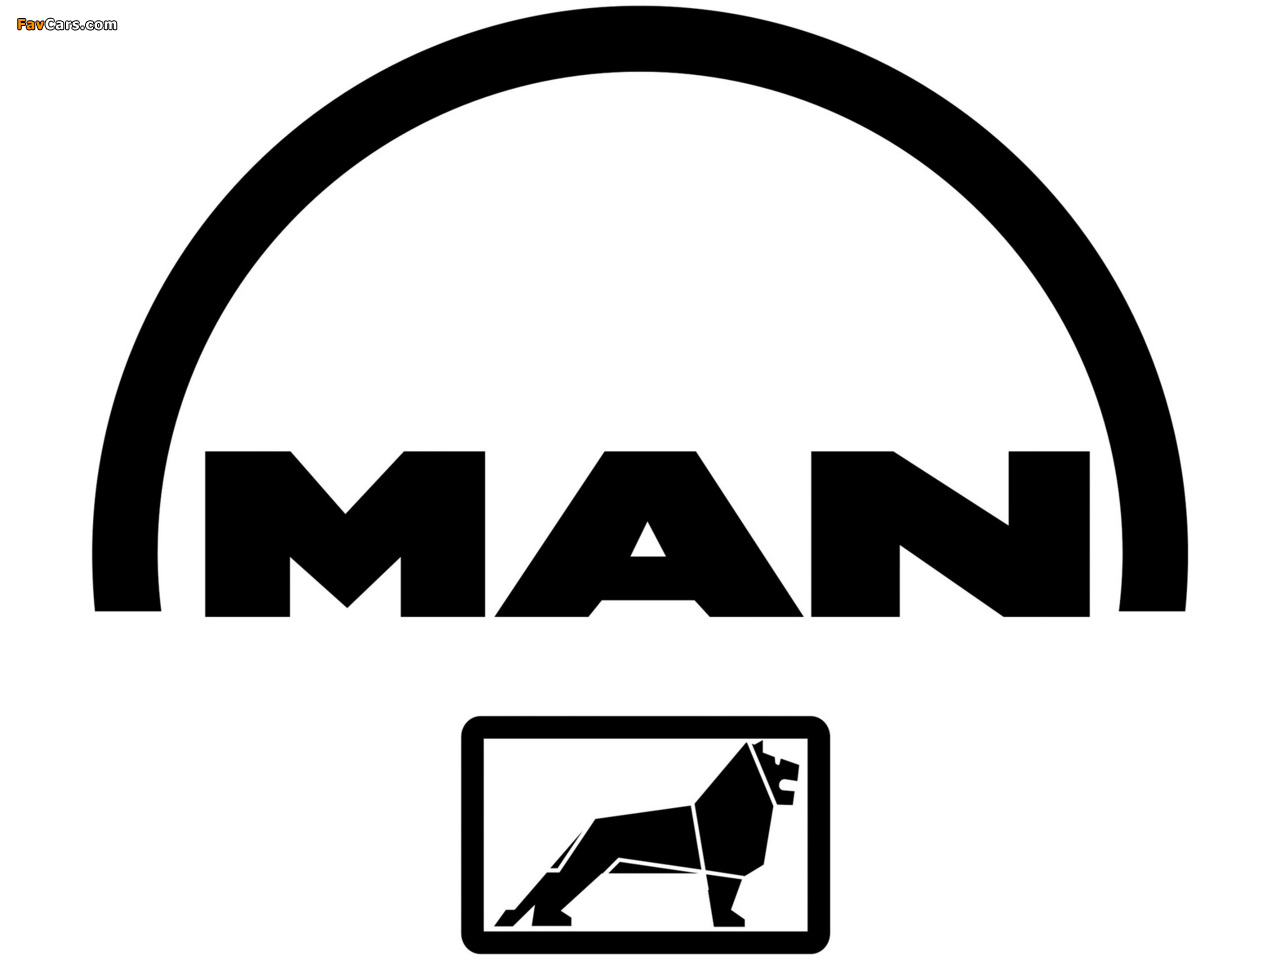 MAN images (1280 x 960)